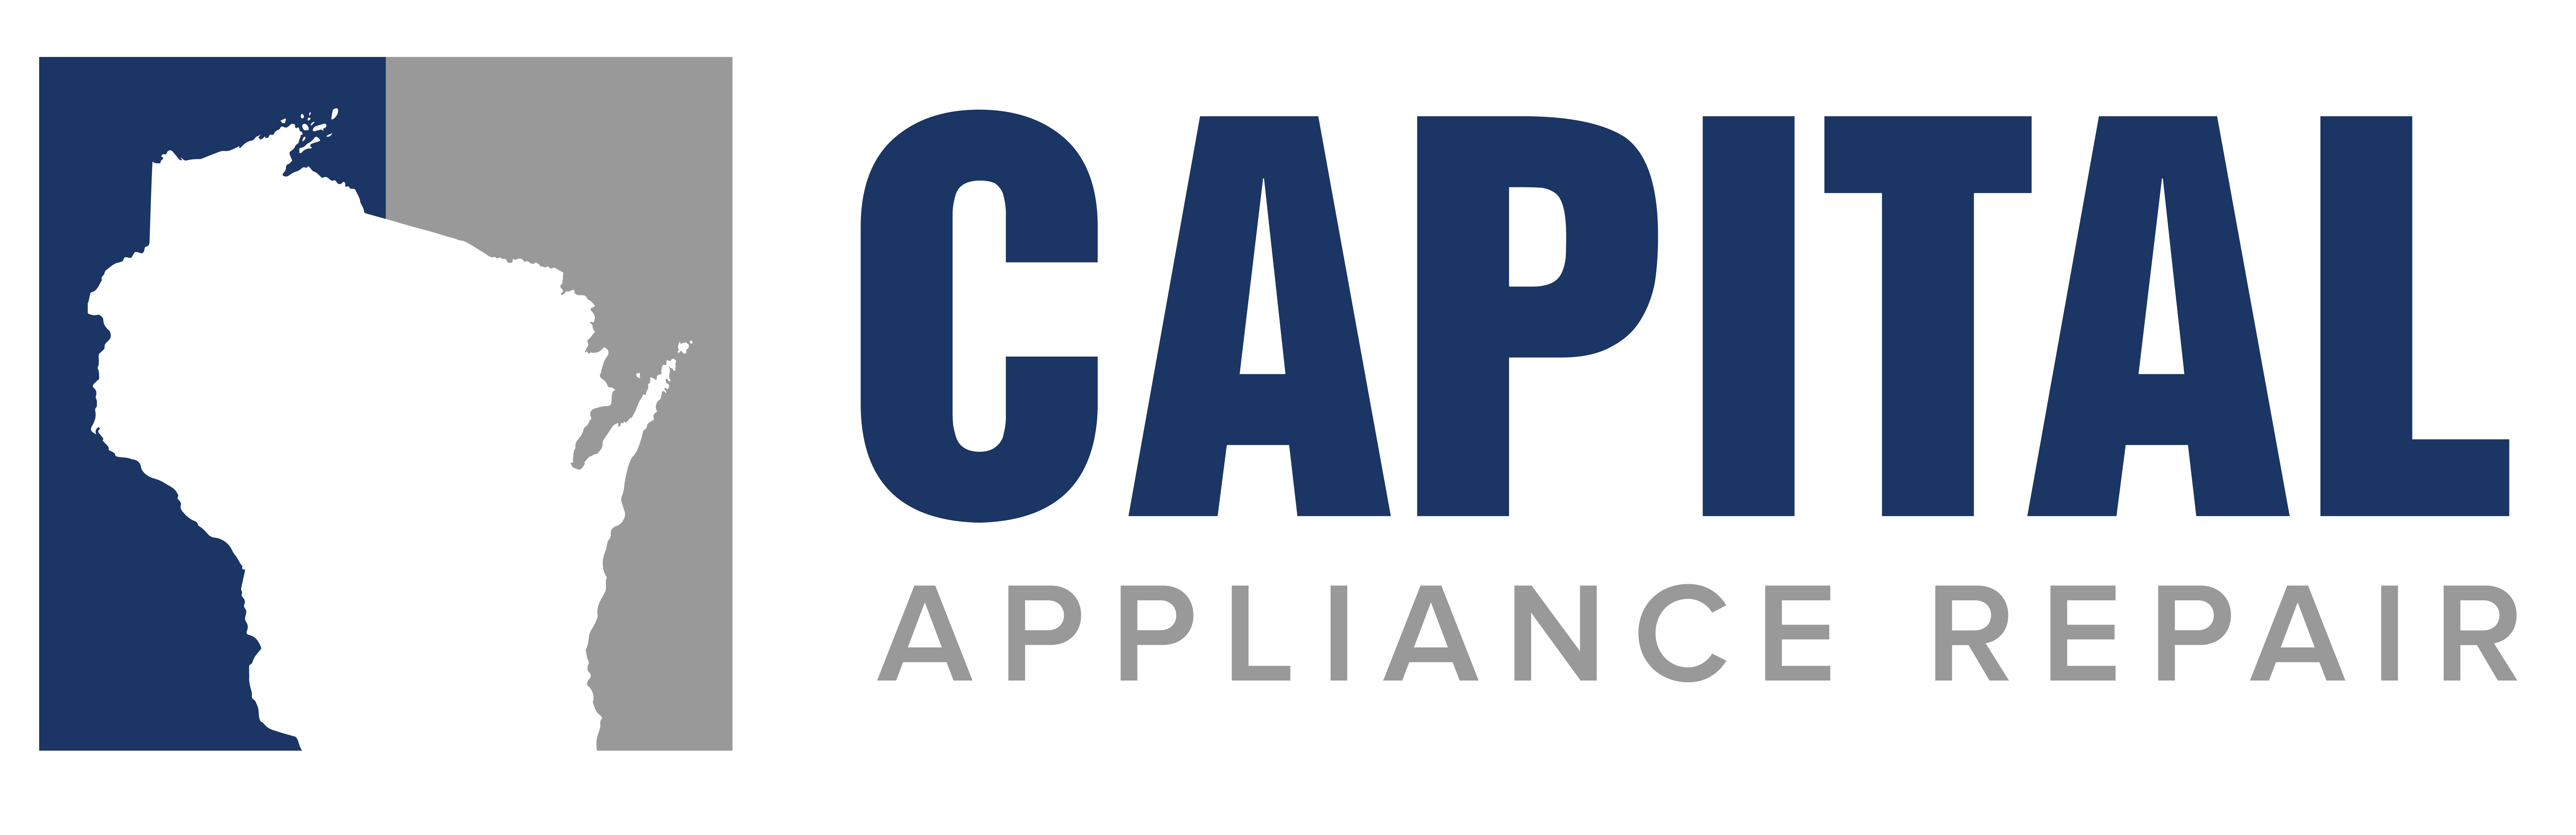 capital appliance repair logo